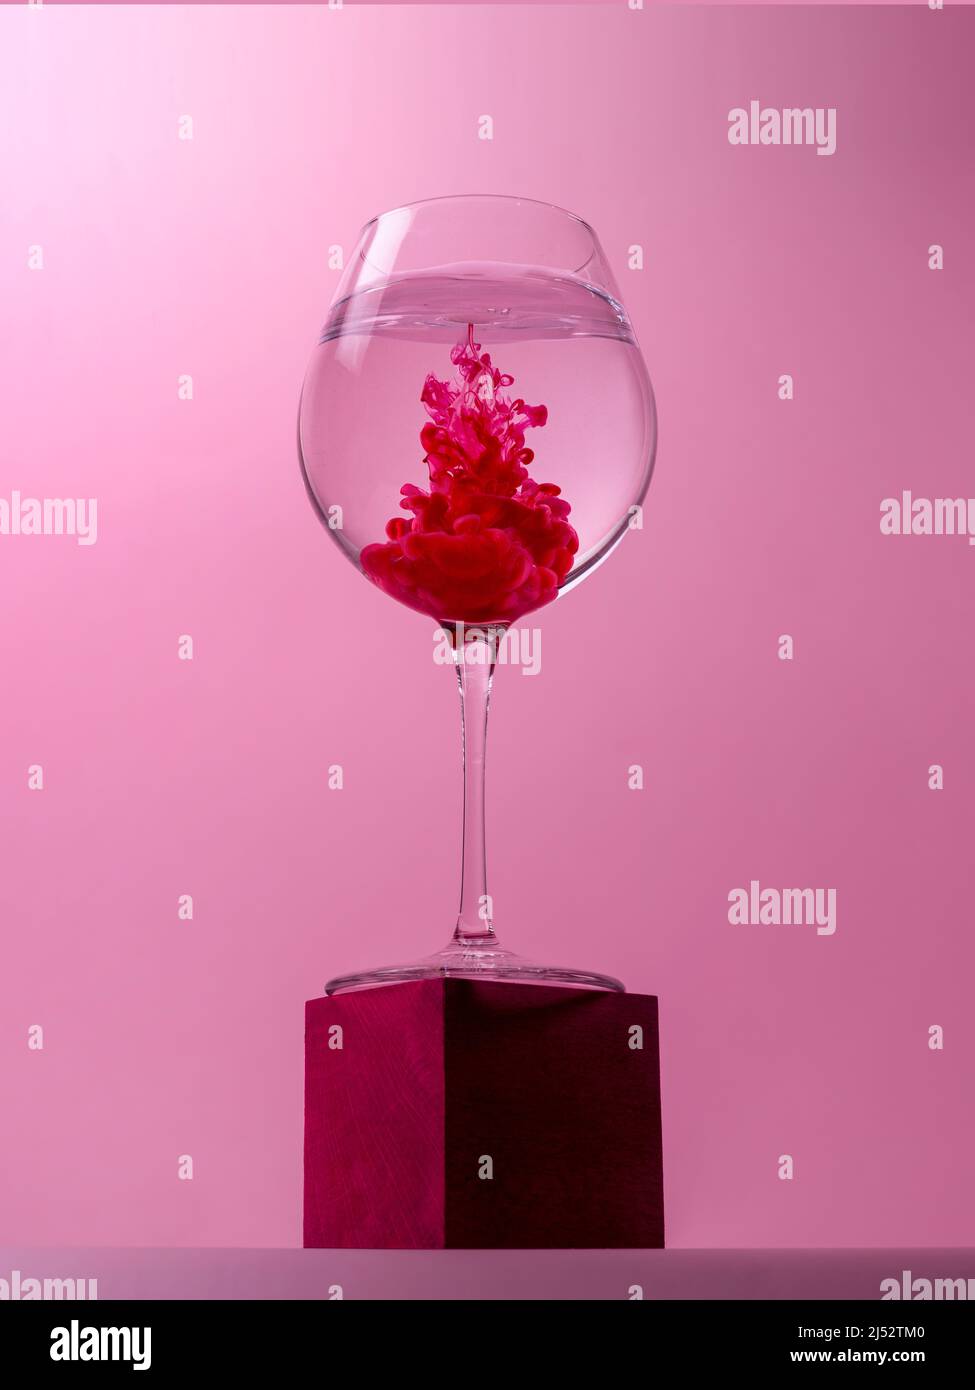 Weinglas auf einem Würfel mit rotem Farbstoff, der sich in Wasser auflöst Stockfoto